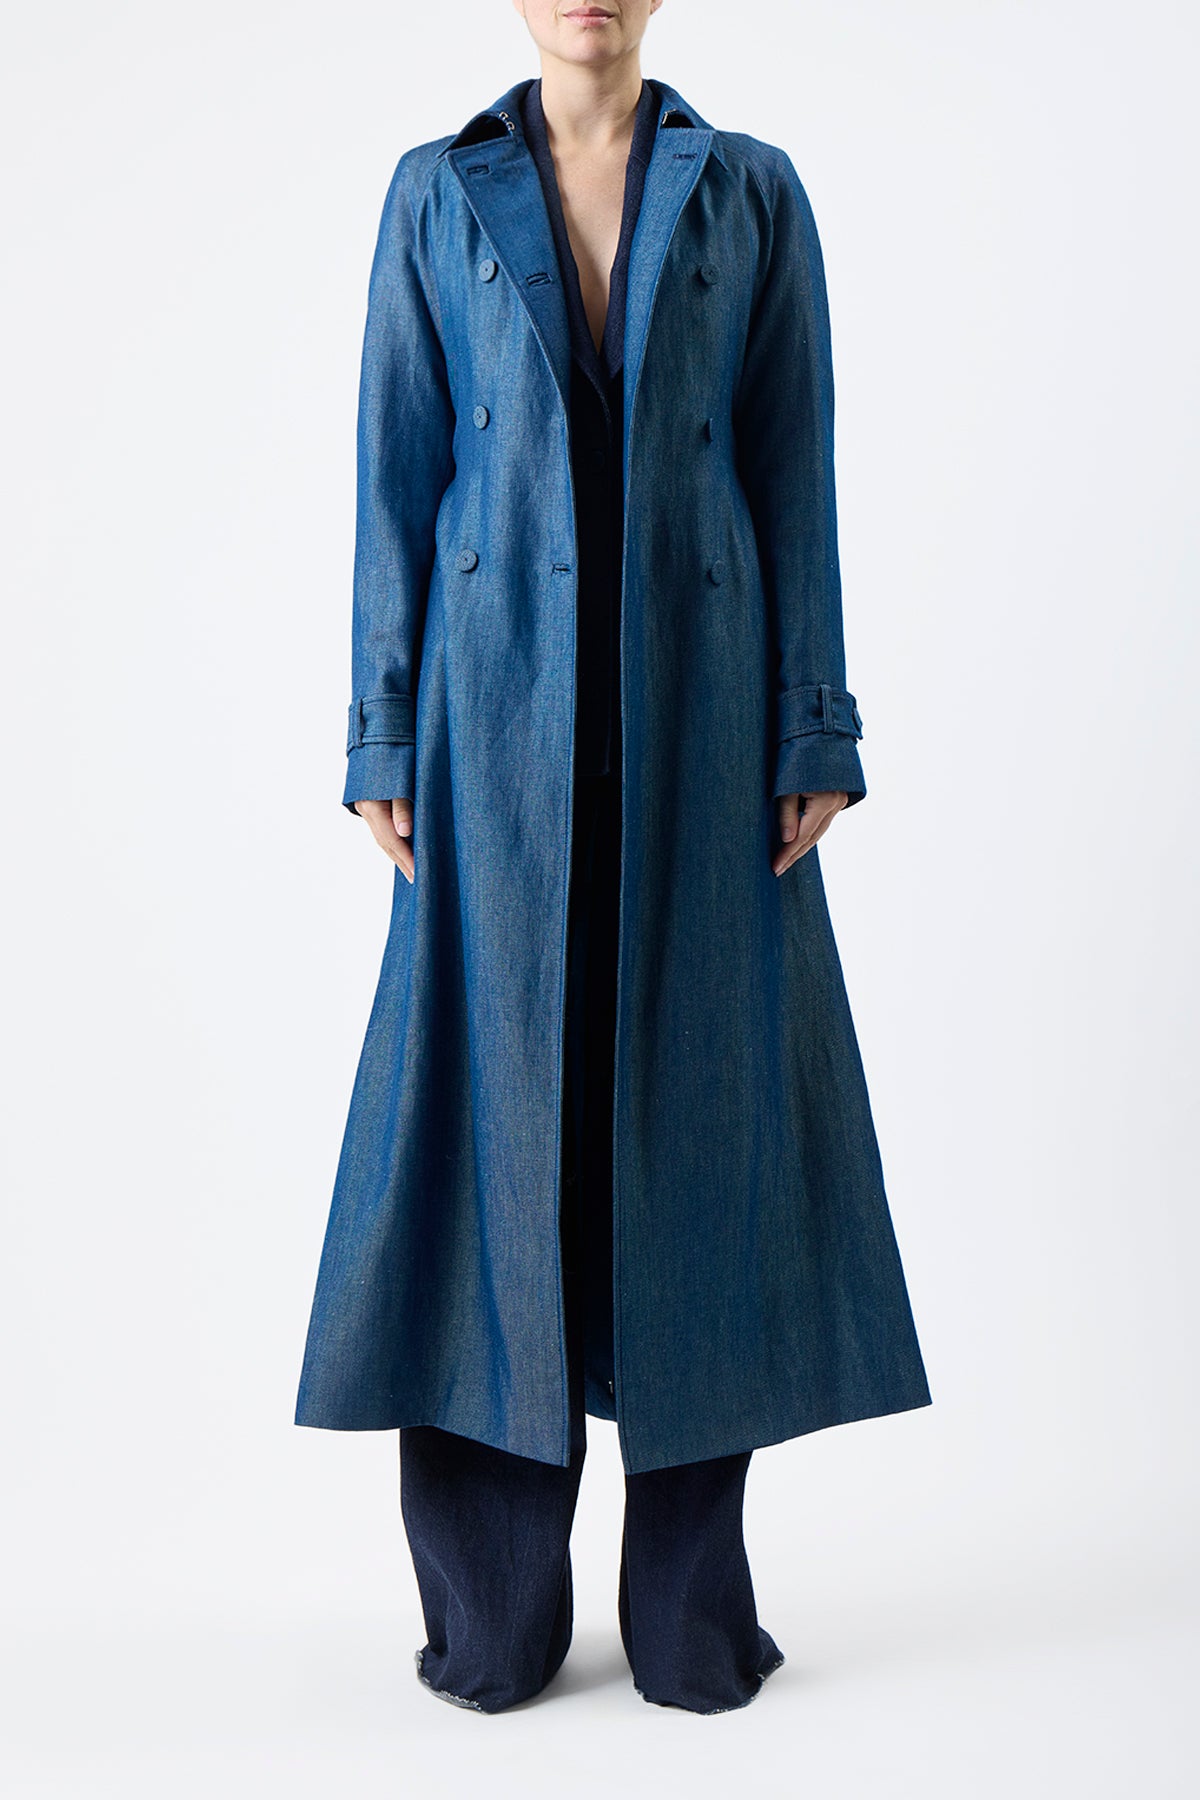 Braden Trench Coat in Deep Blue Wool Linen